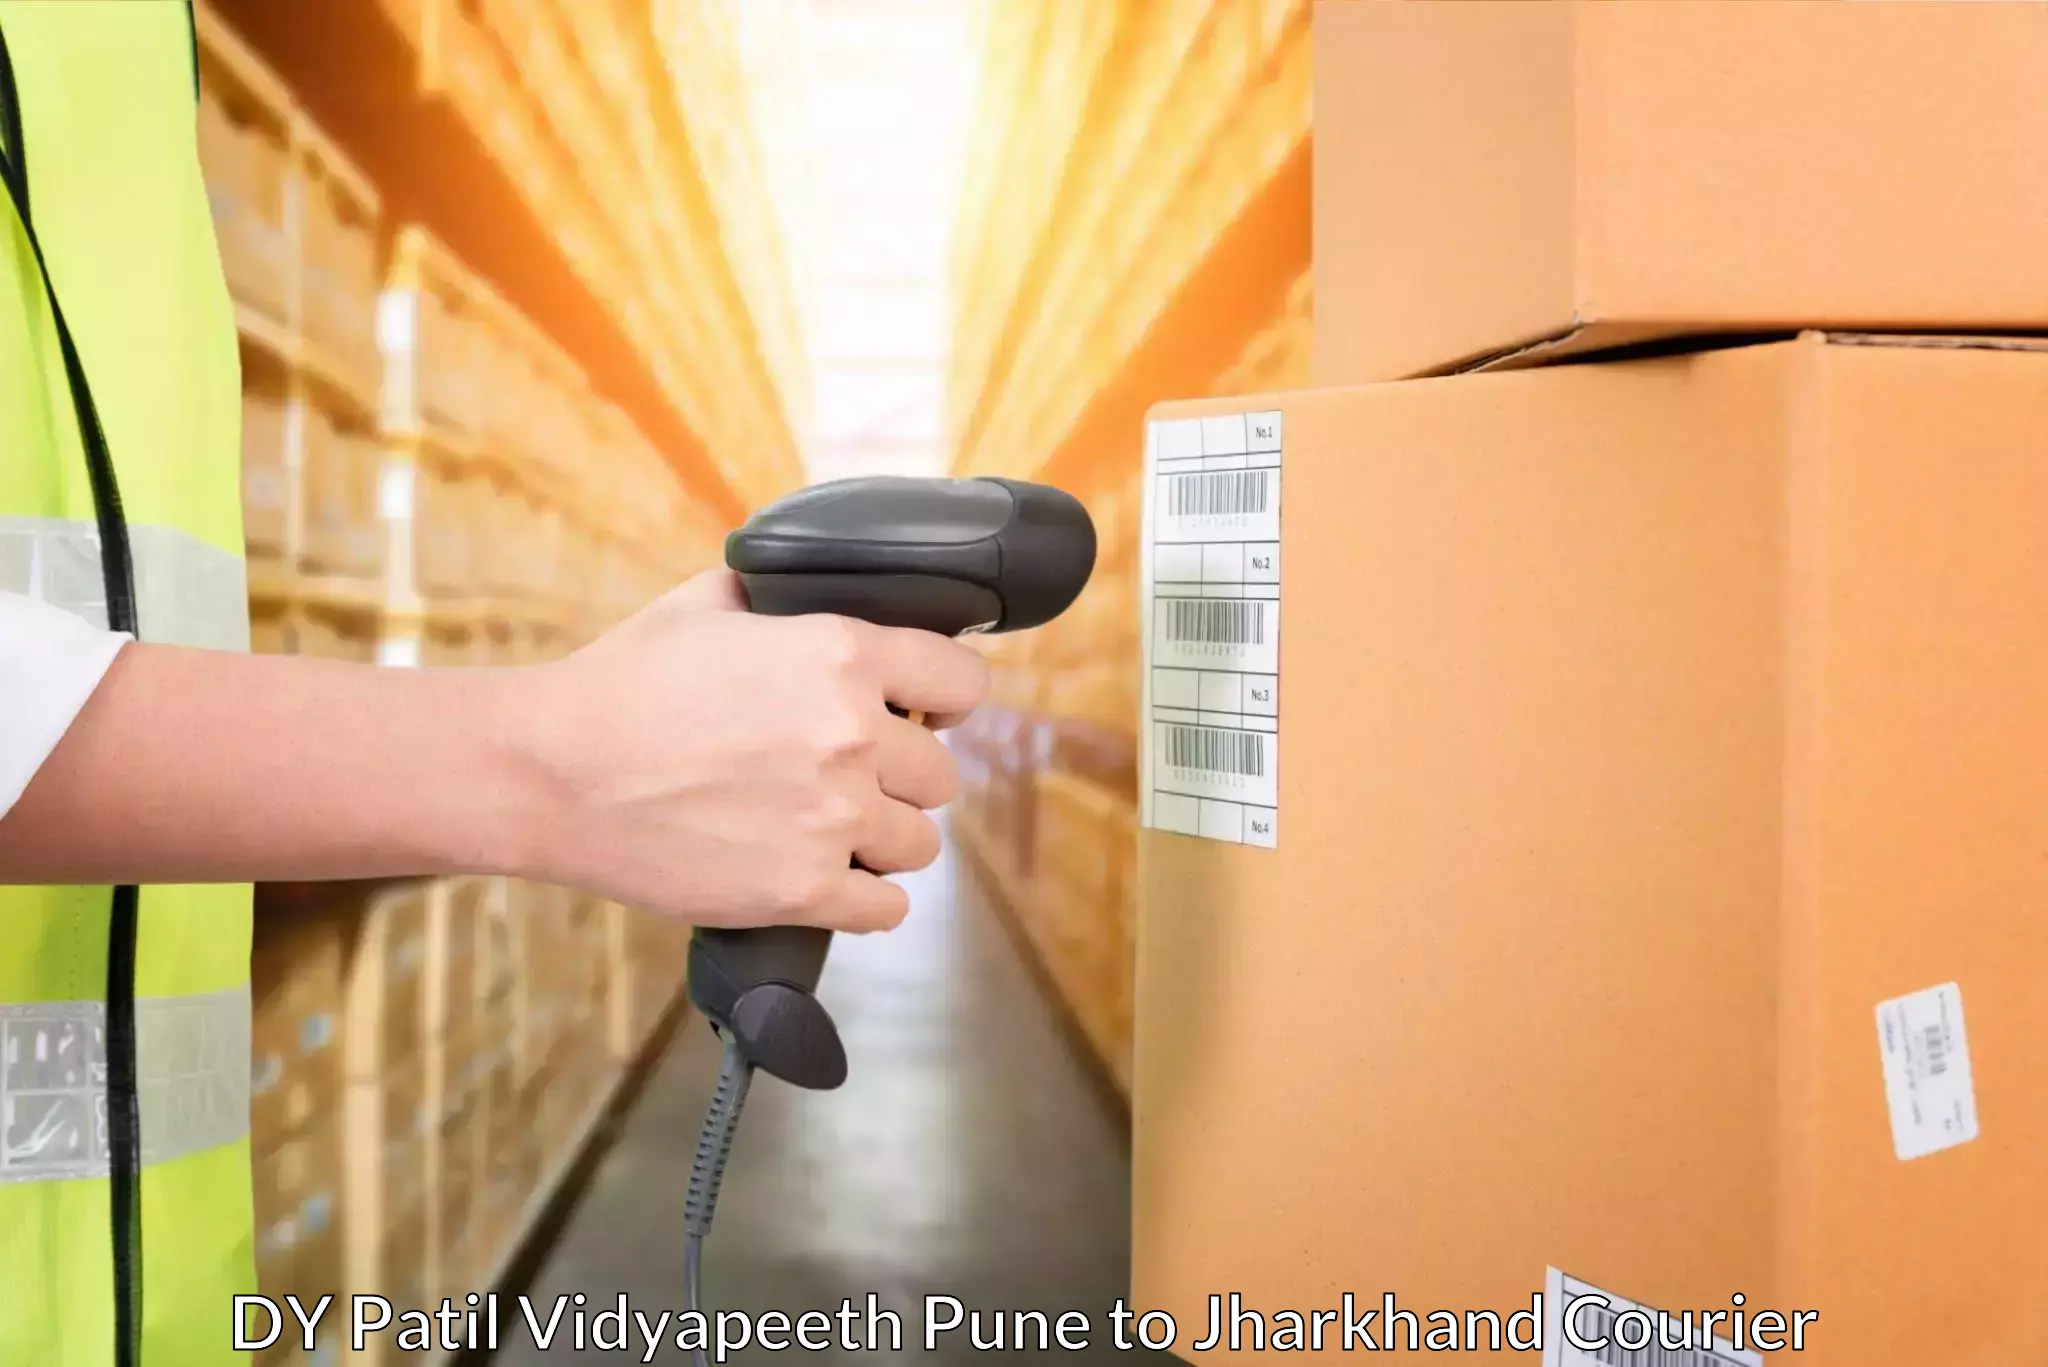 Door-to-door shipment DY Patil Vidyapeeth Pune to Kolebira